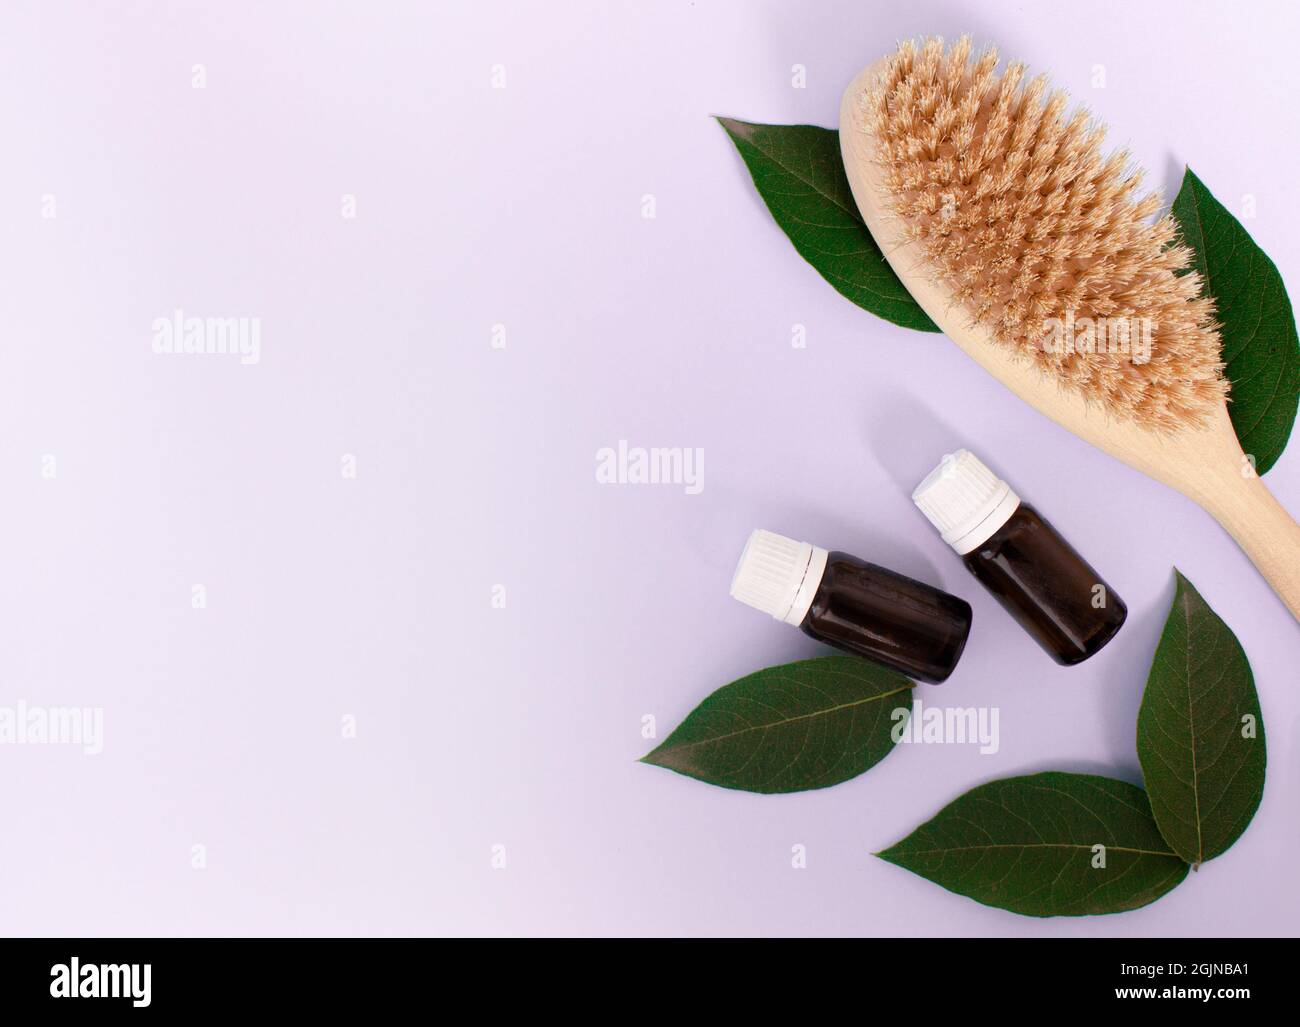 brosse en bois pour le massage corporel anti-cellulite, et bouteille cosmétique sur fond violet clair. Concept de soins du corps Banque D'Images